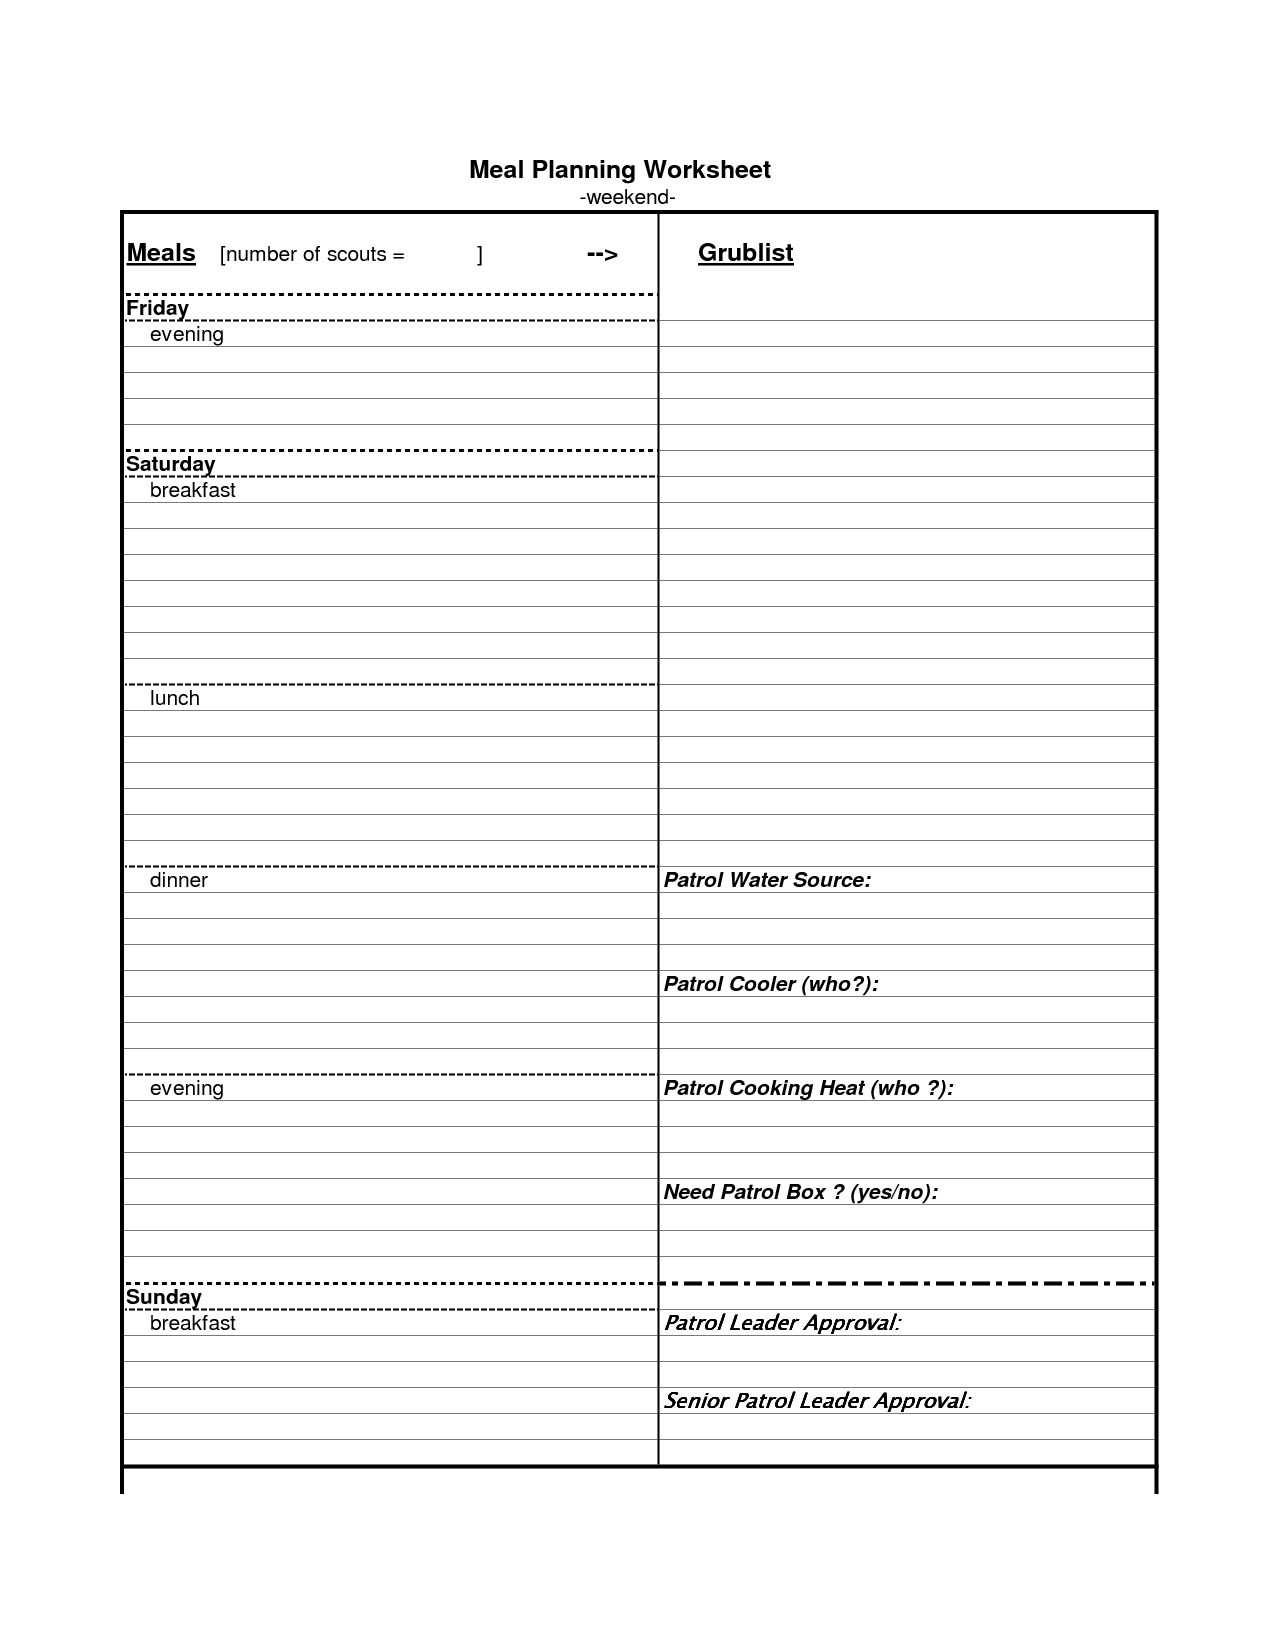 Meal-Planning Worksheet Image